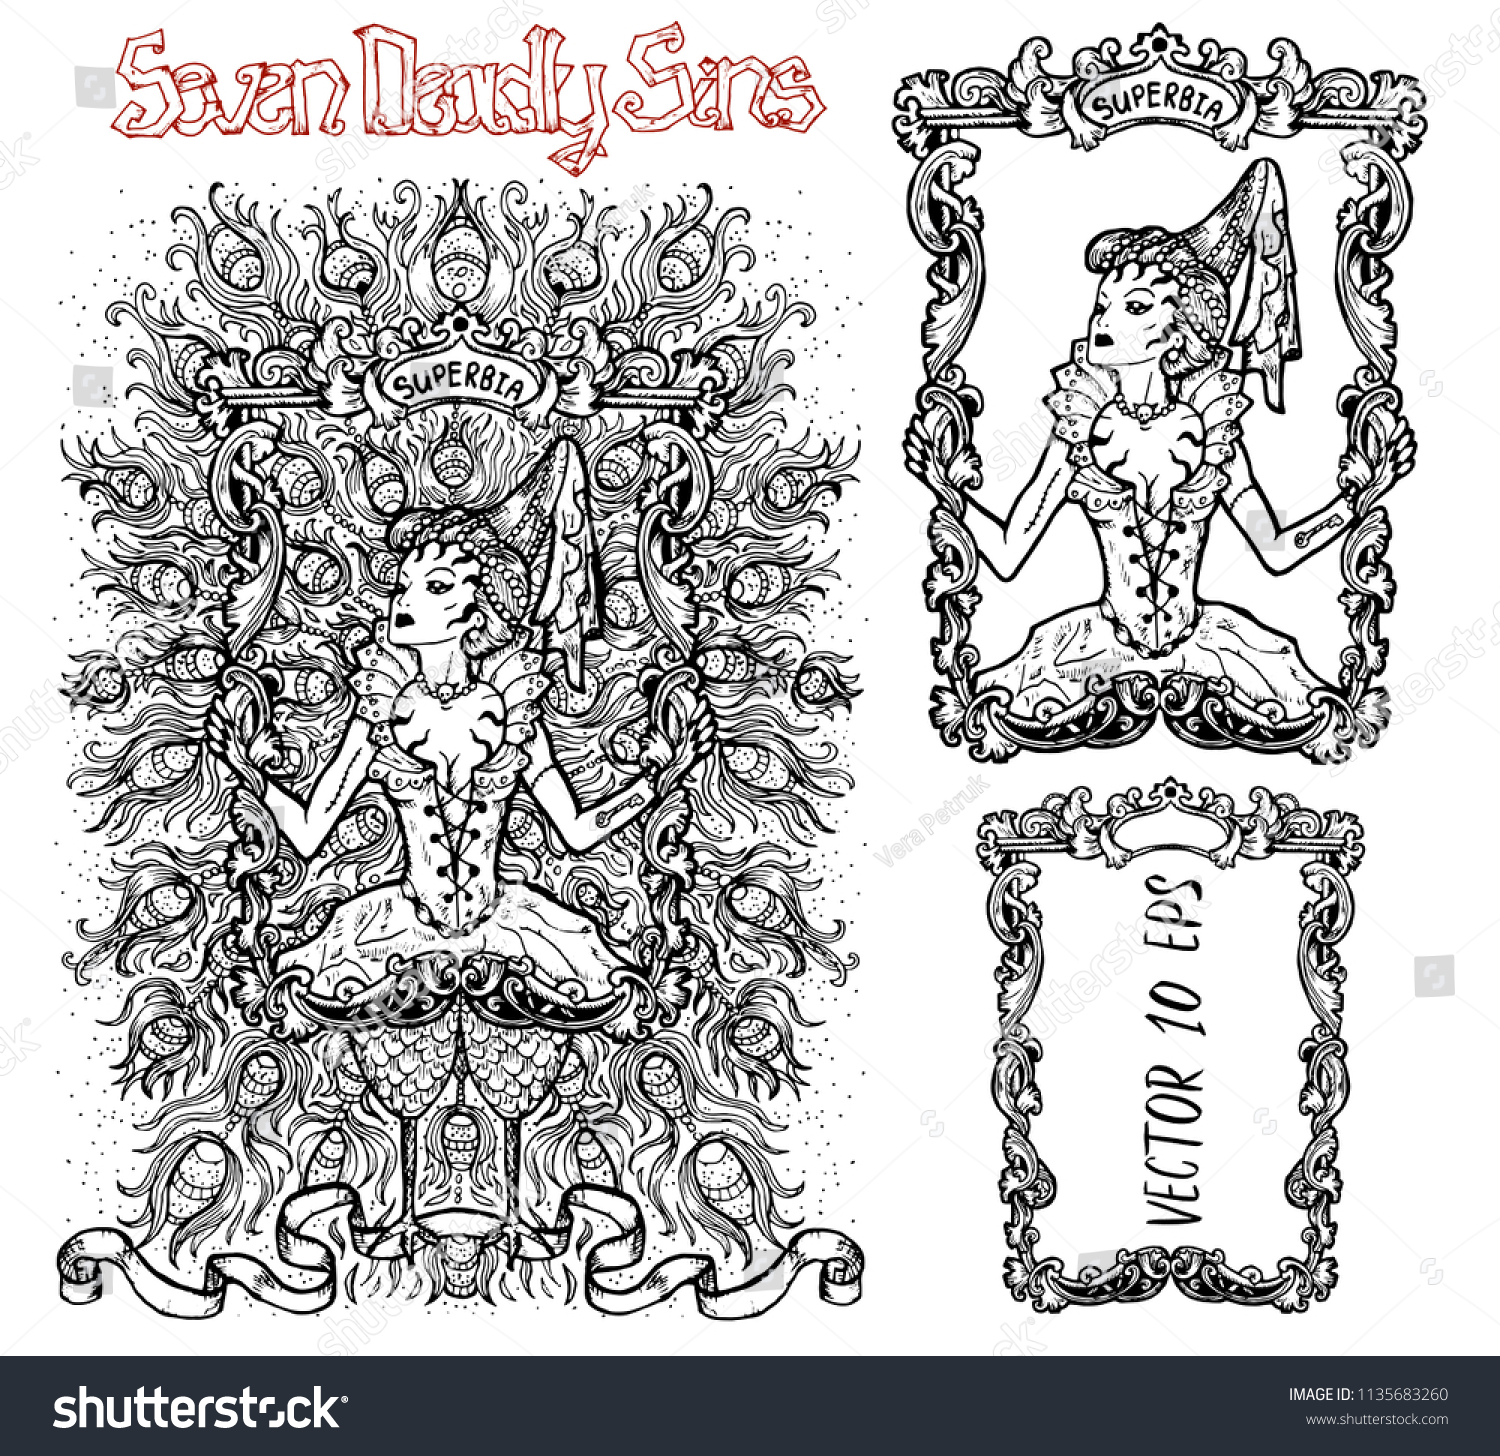 プライド ラテン語のスーパービアは虚栄心を意味する 7つの大罪のコンセプト 黒と白のベクター画像セットとフレーム 手描きの彫刻イラスト タトゥー Tシャツ 宗教シンボル のベクター画像素材 ロイヤリティフリー